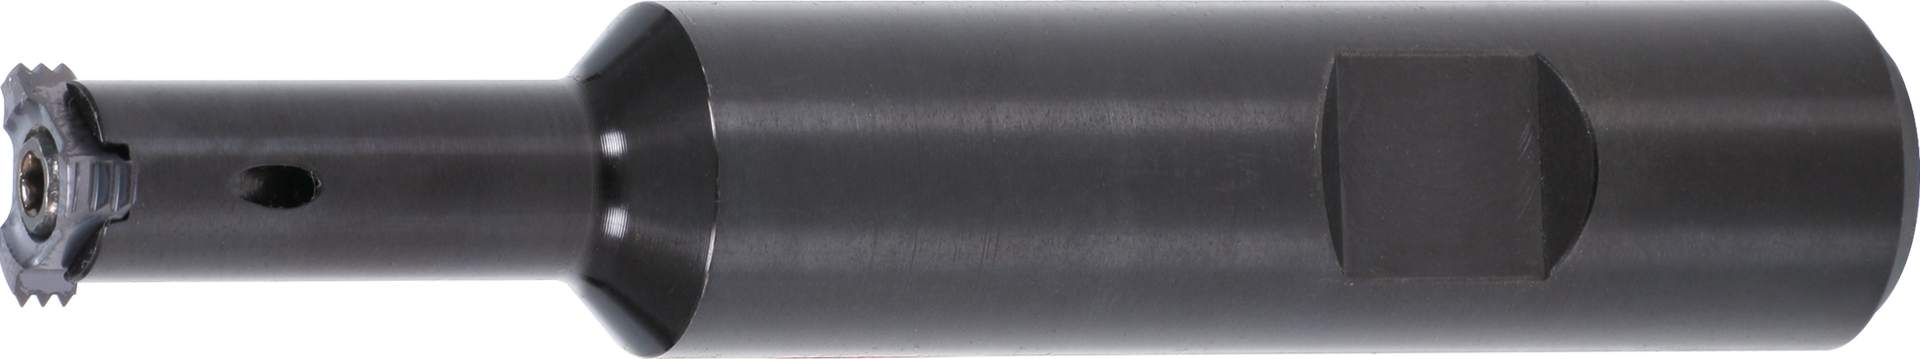 Vertikal-Wendeschneidplatten-Gewindefräshalter Stahl GL70mm IK WN D12mm NL25mm